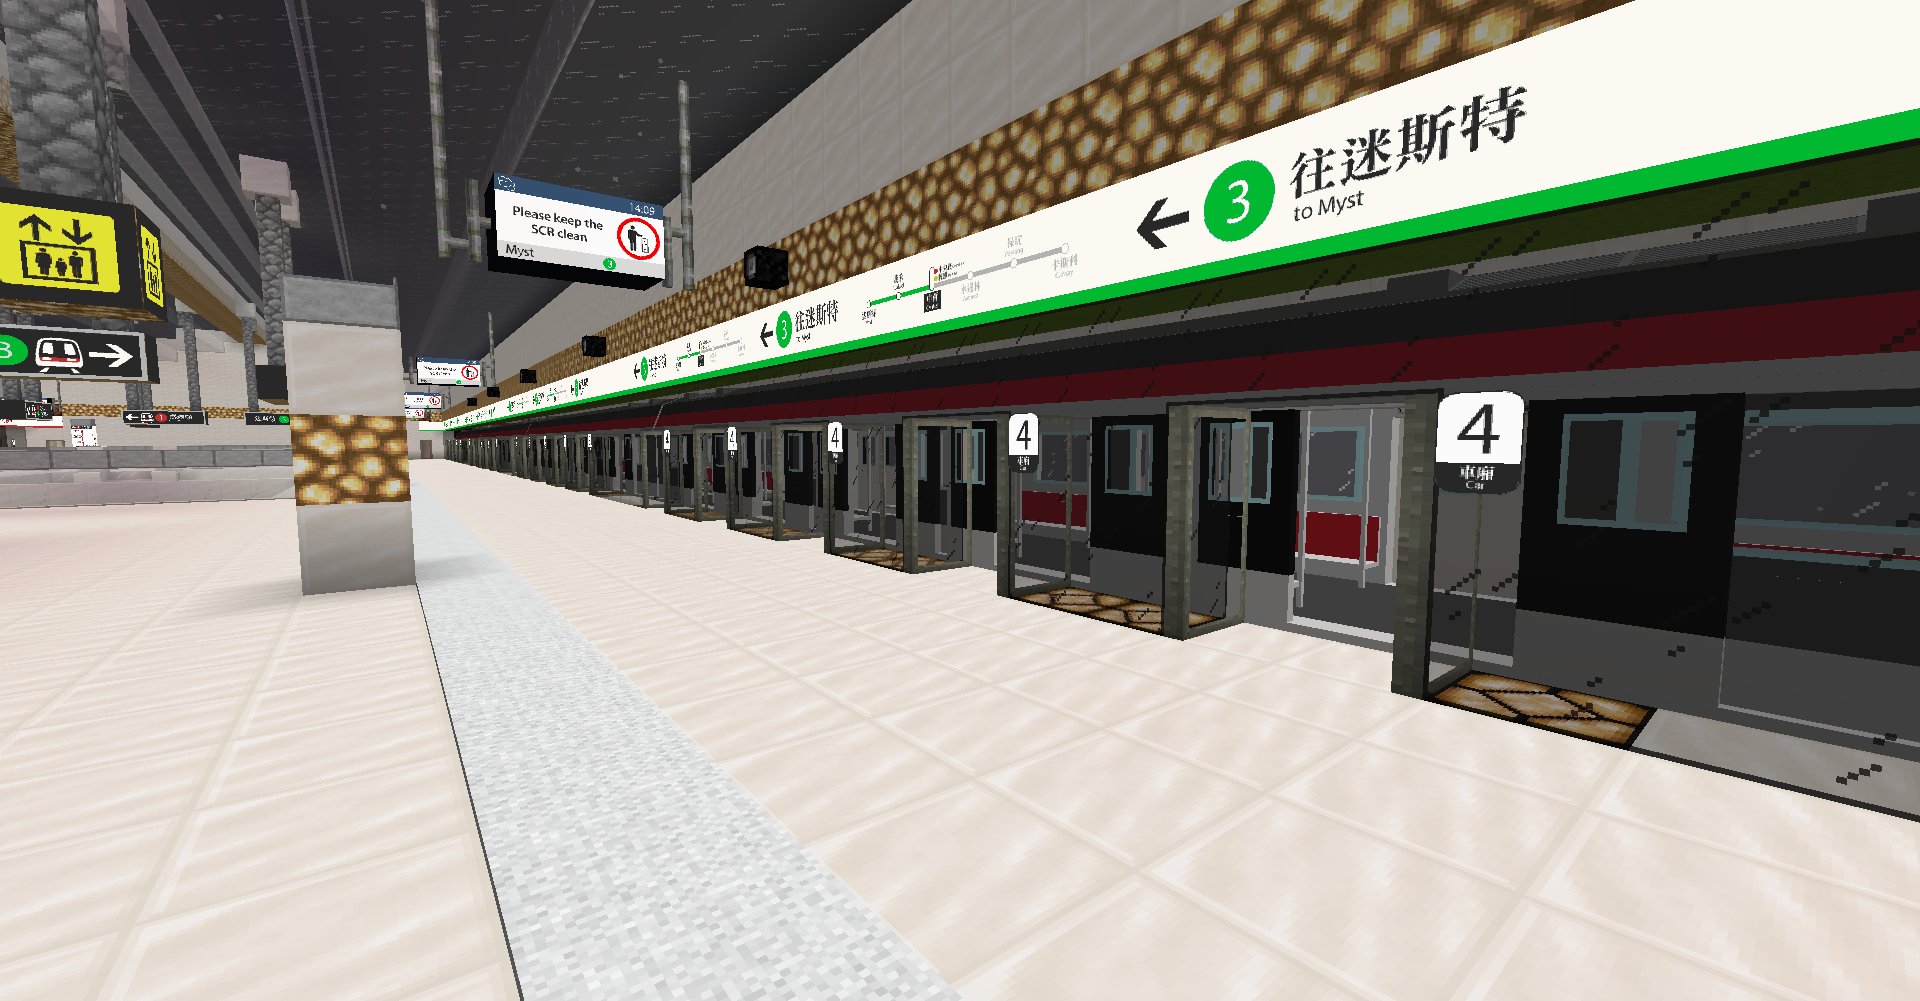 SCR Central Station Platform 3